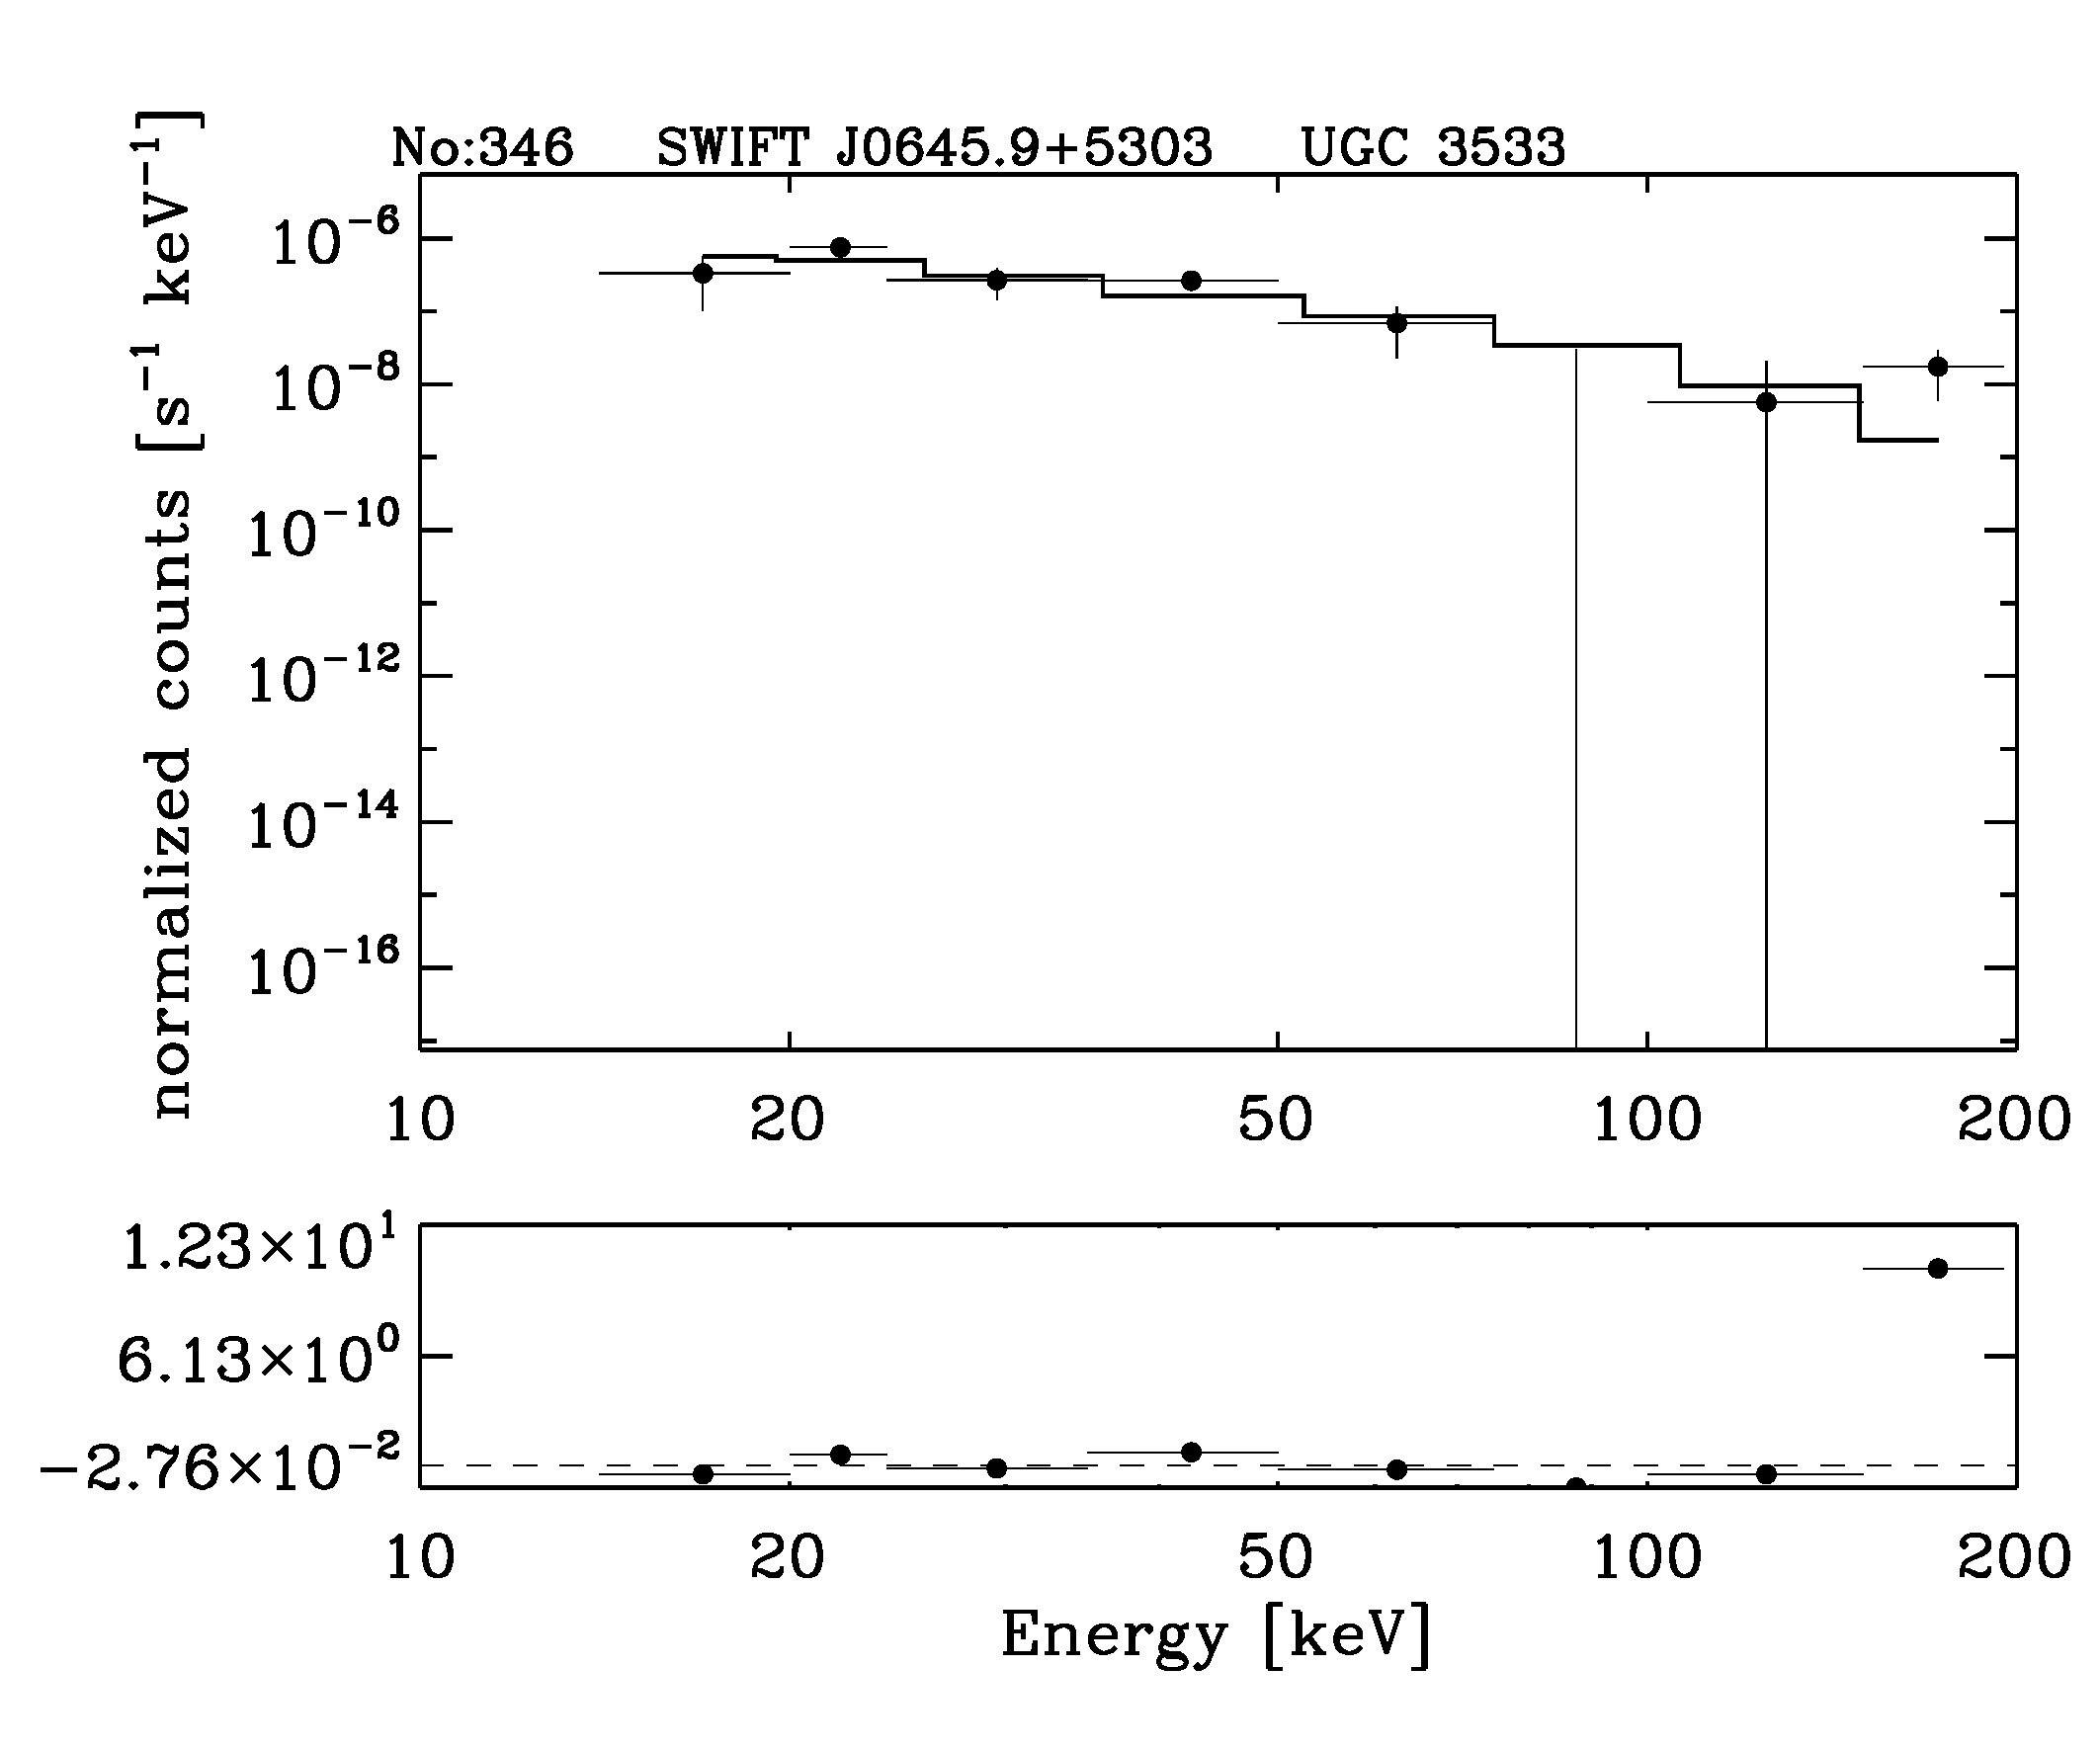 BAT Spectrum for SWIFT J0645.9+5303